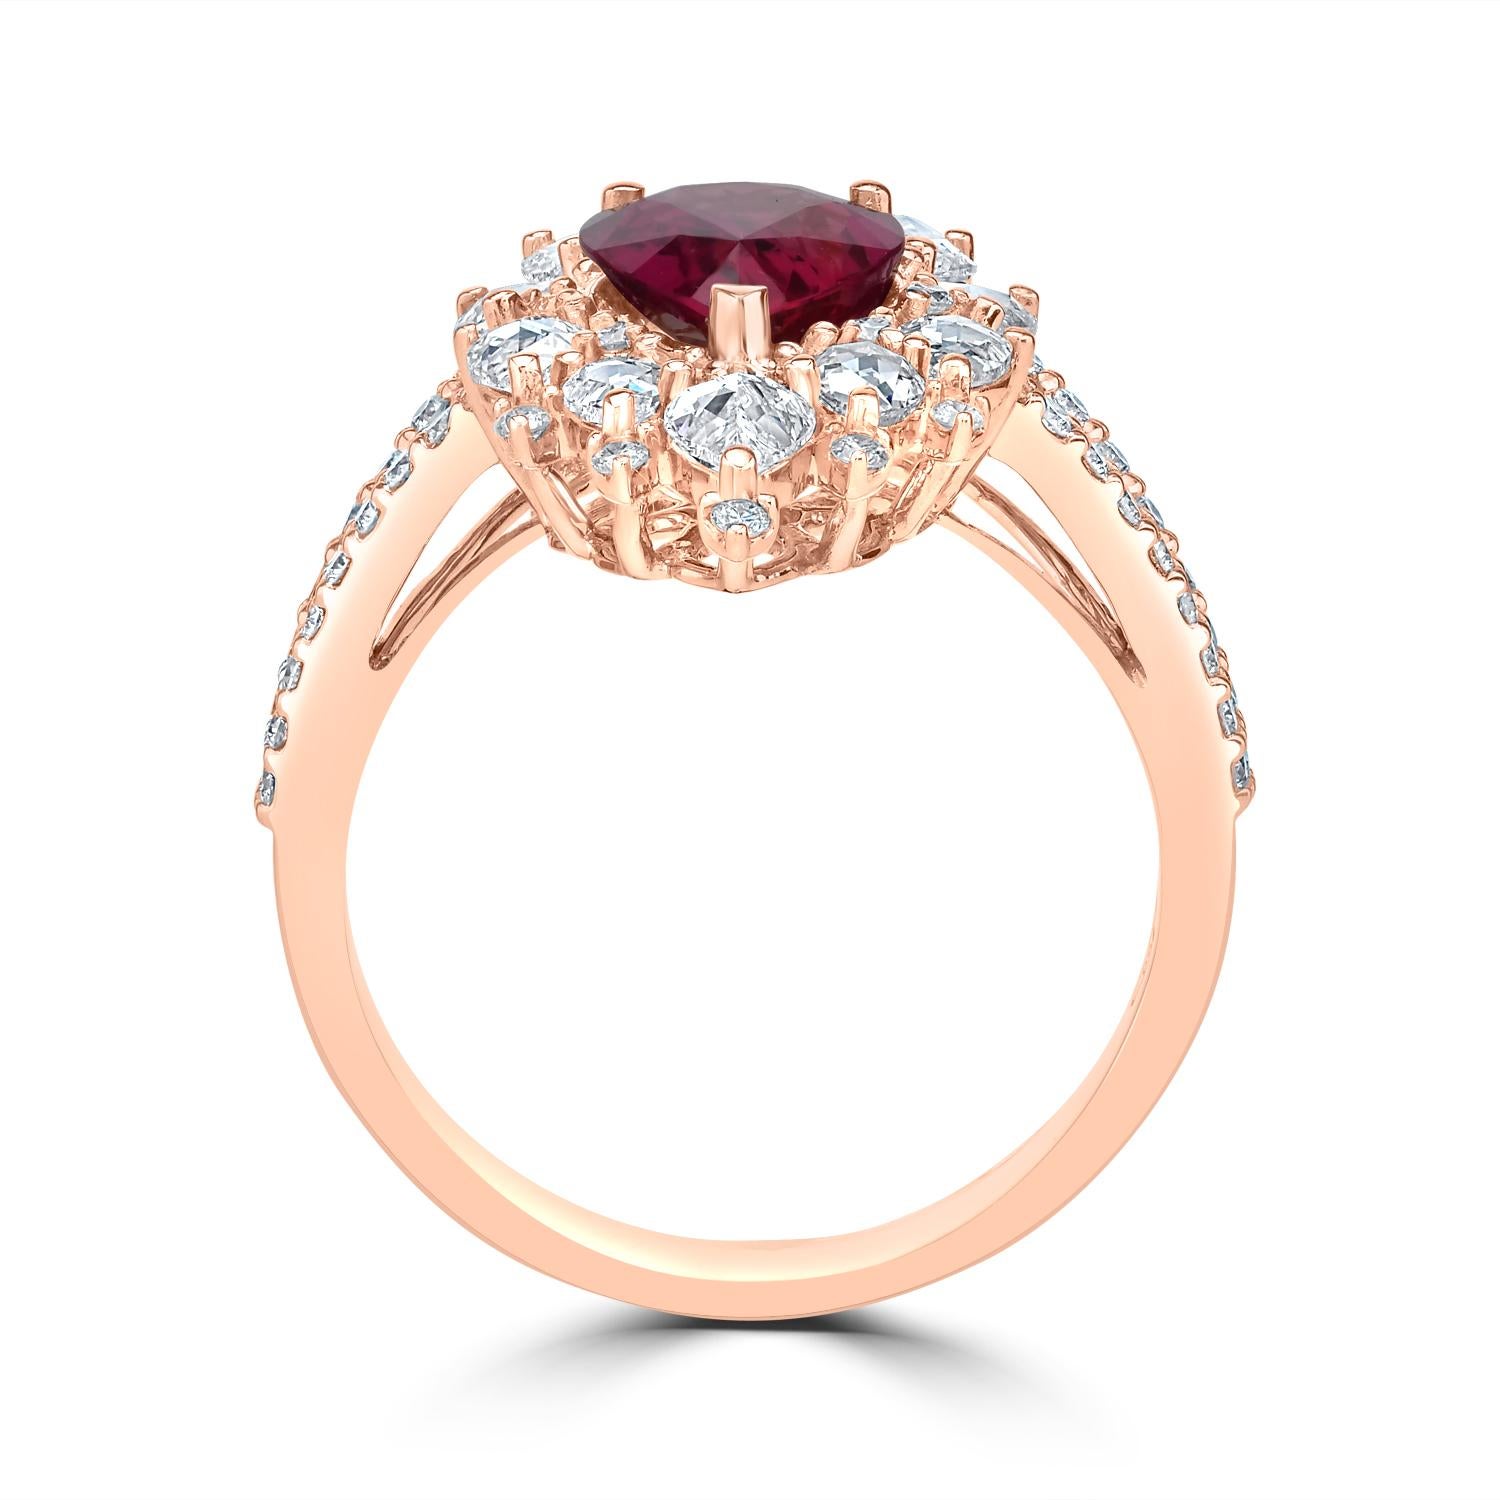 Wir stellen Ihnen ein wahrhaft atemberaubendes und fesselndes Schmuckstück vor - den Ring aus 18 Karat Roségold mit 2,21 Karat No Heat Winza Rubin und 1,50 Karat Diamanten im Rosenschliff in Birnenform. Dieser exquisite Ring ist ein wahres Zeugnis